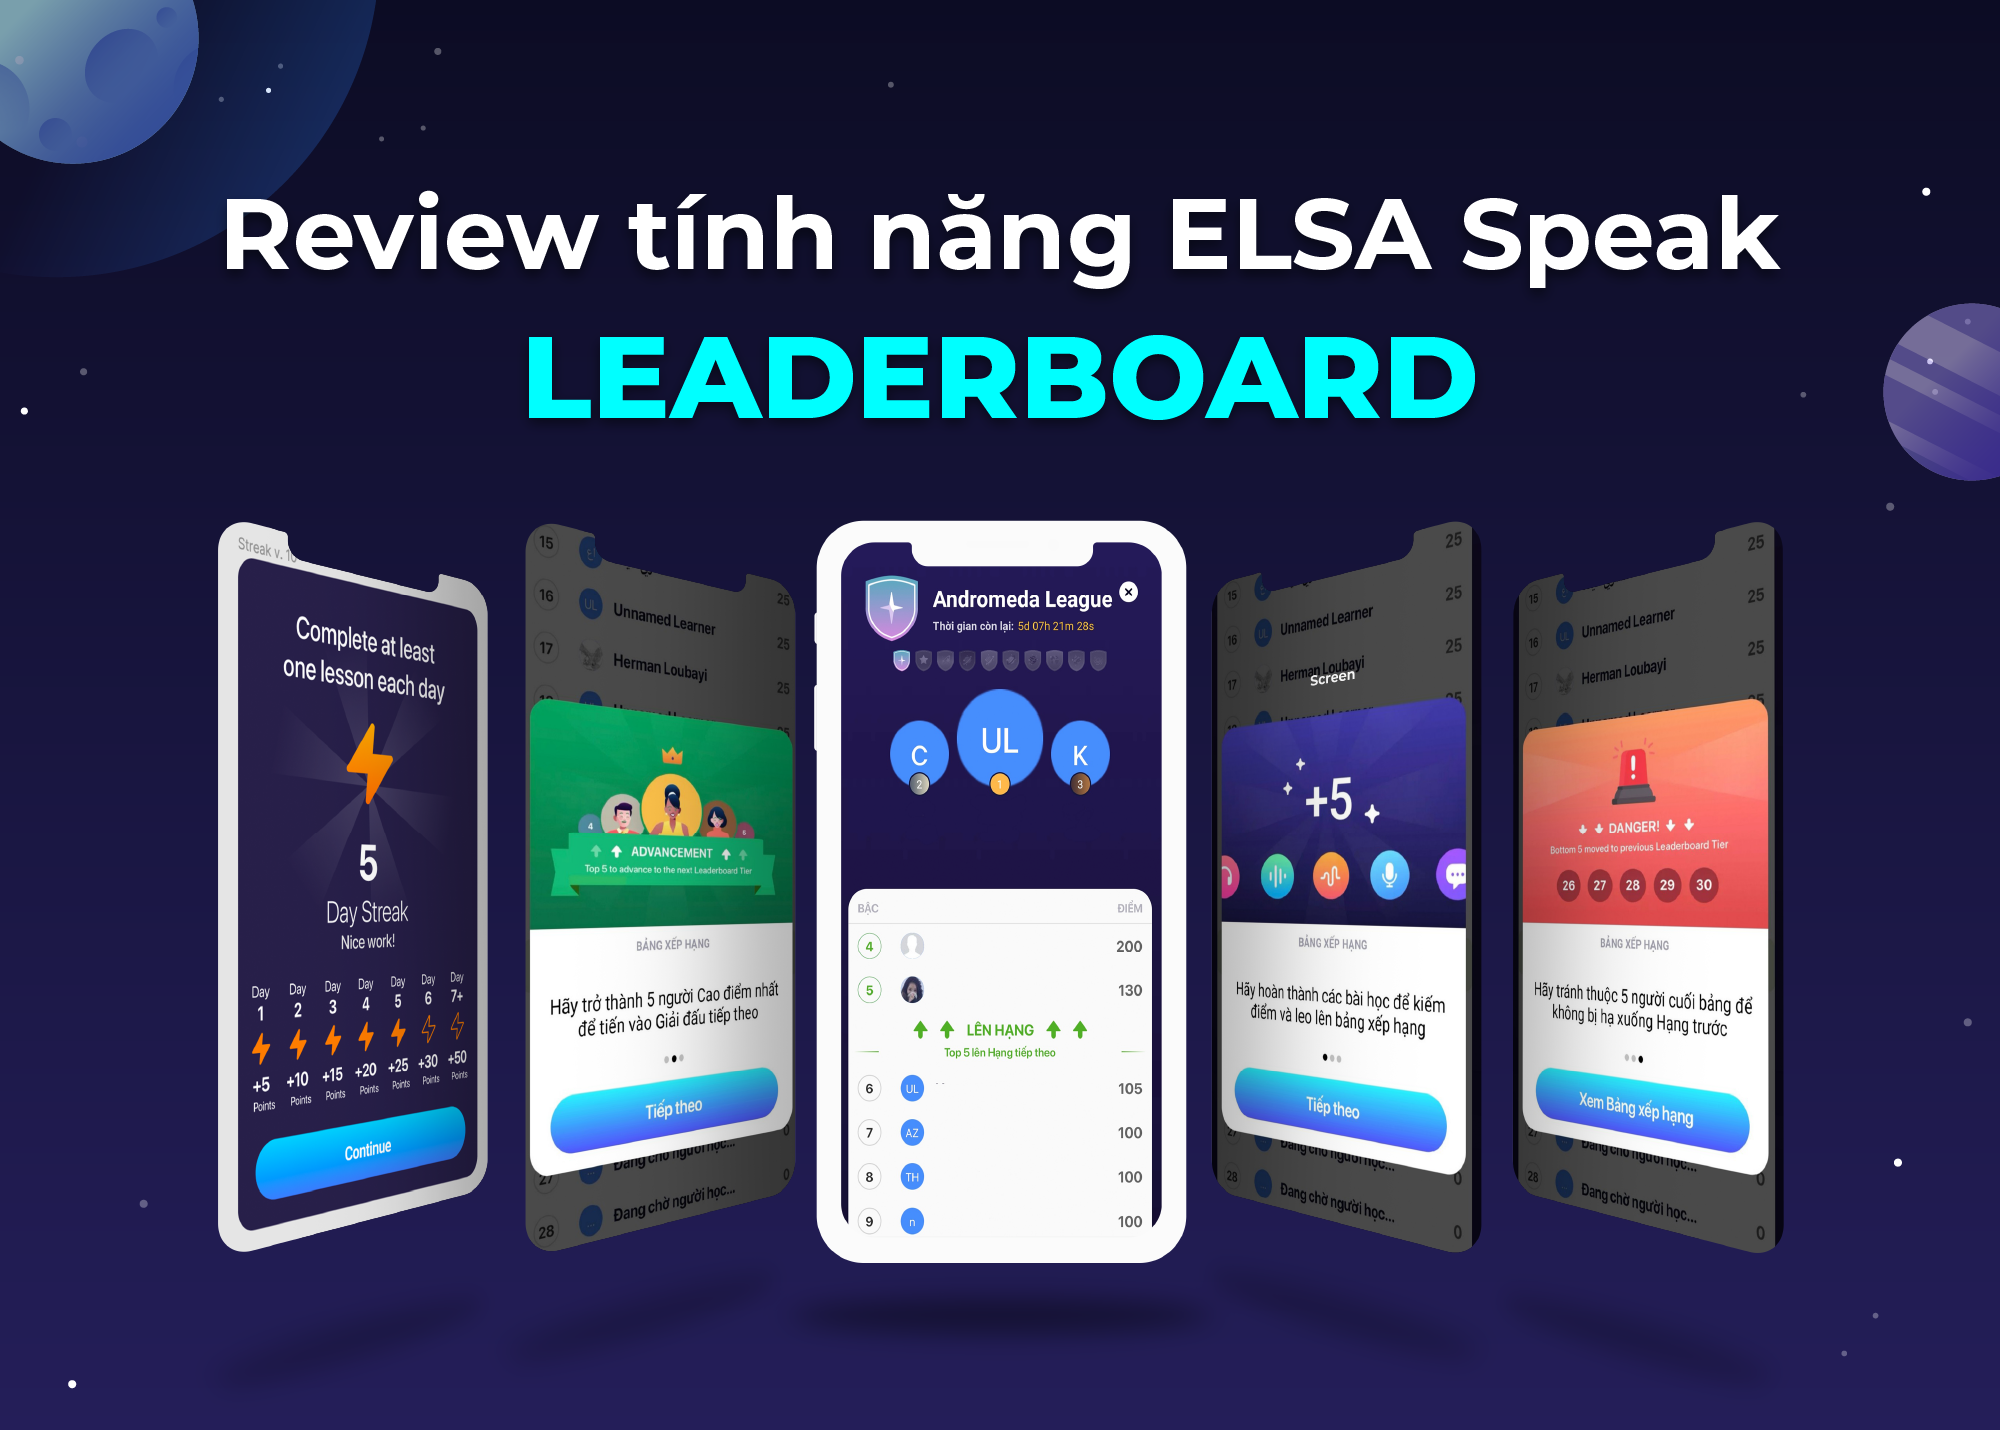 Review ELSA Speak: So trình tiếng Anh với tính năng Leaderboard